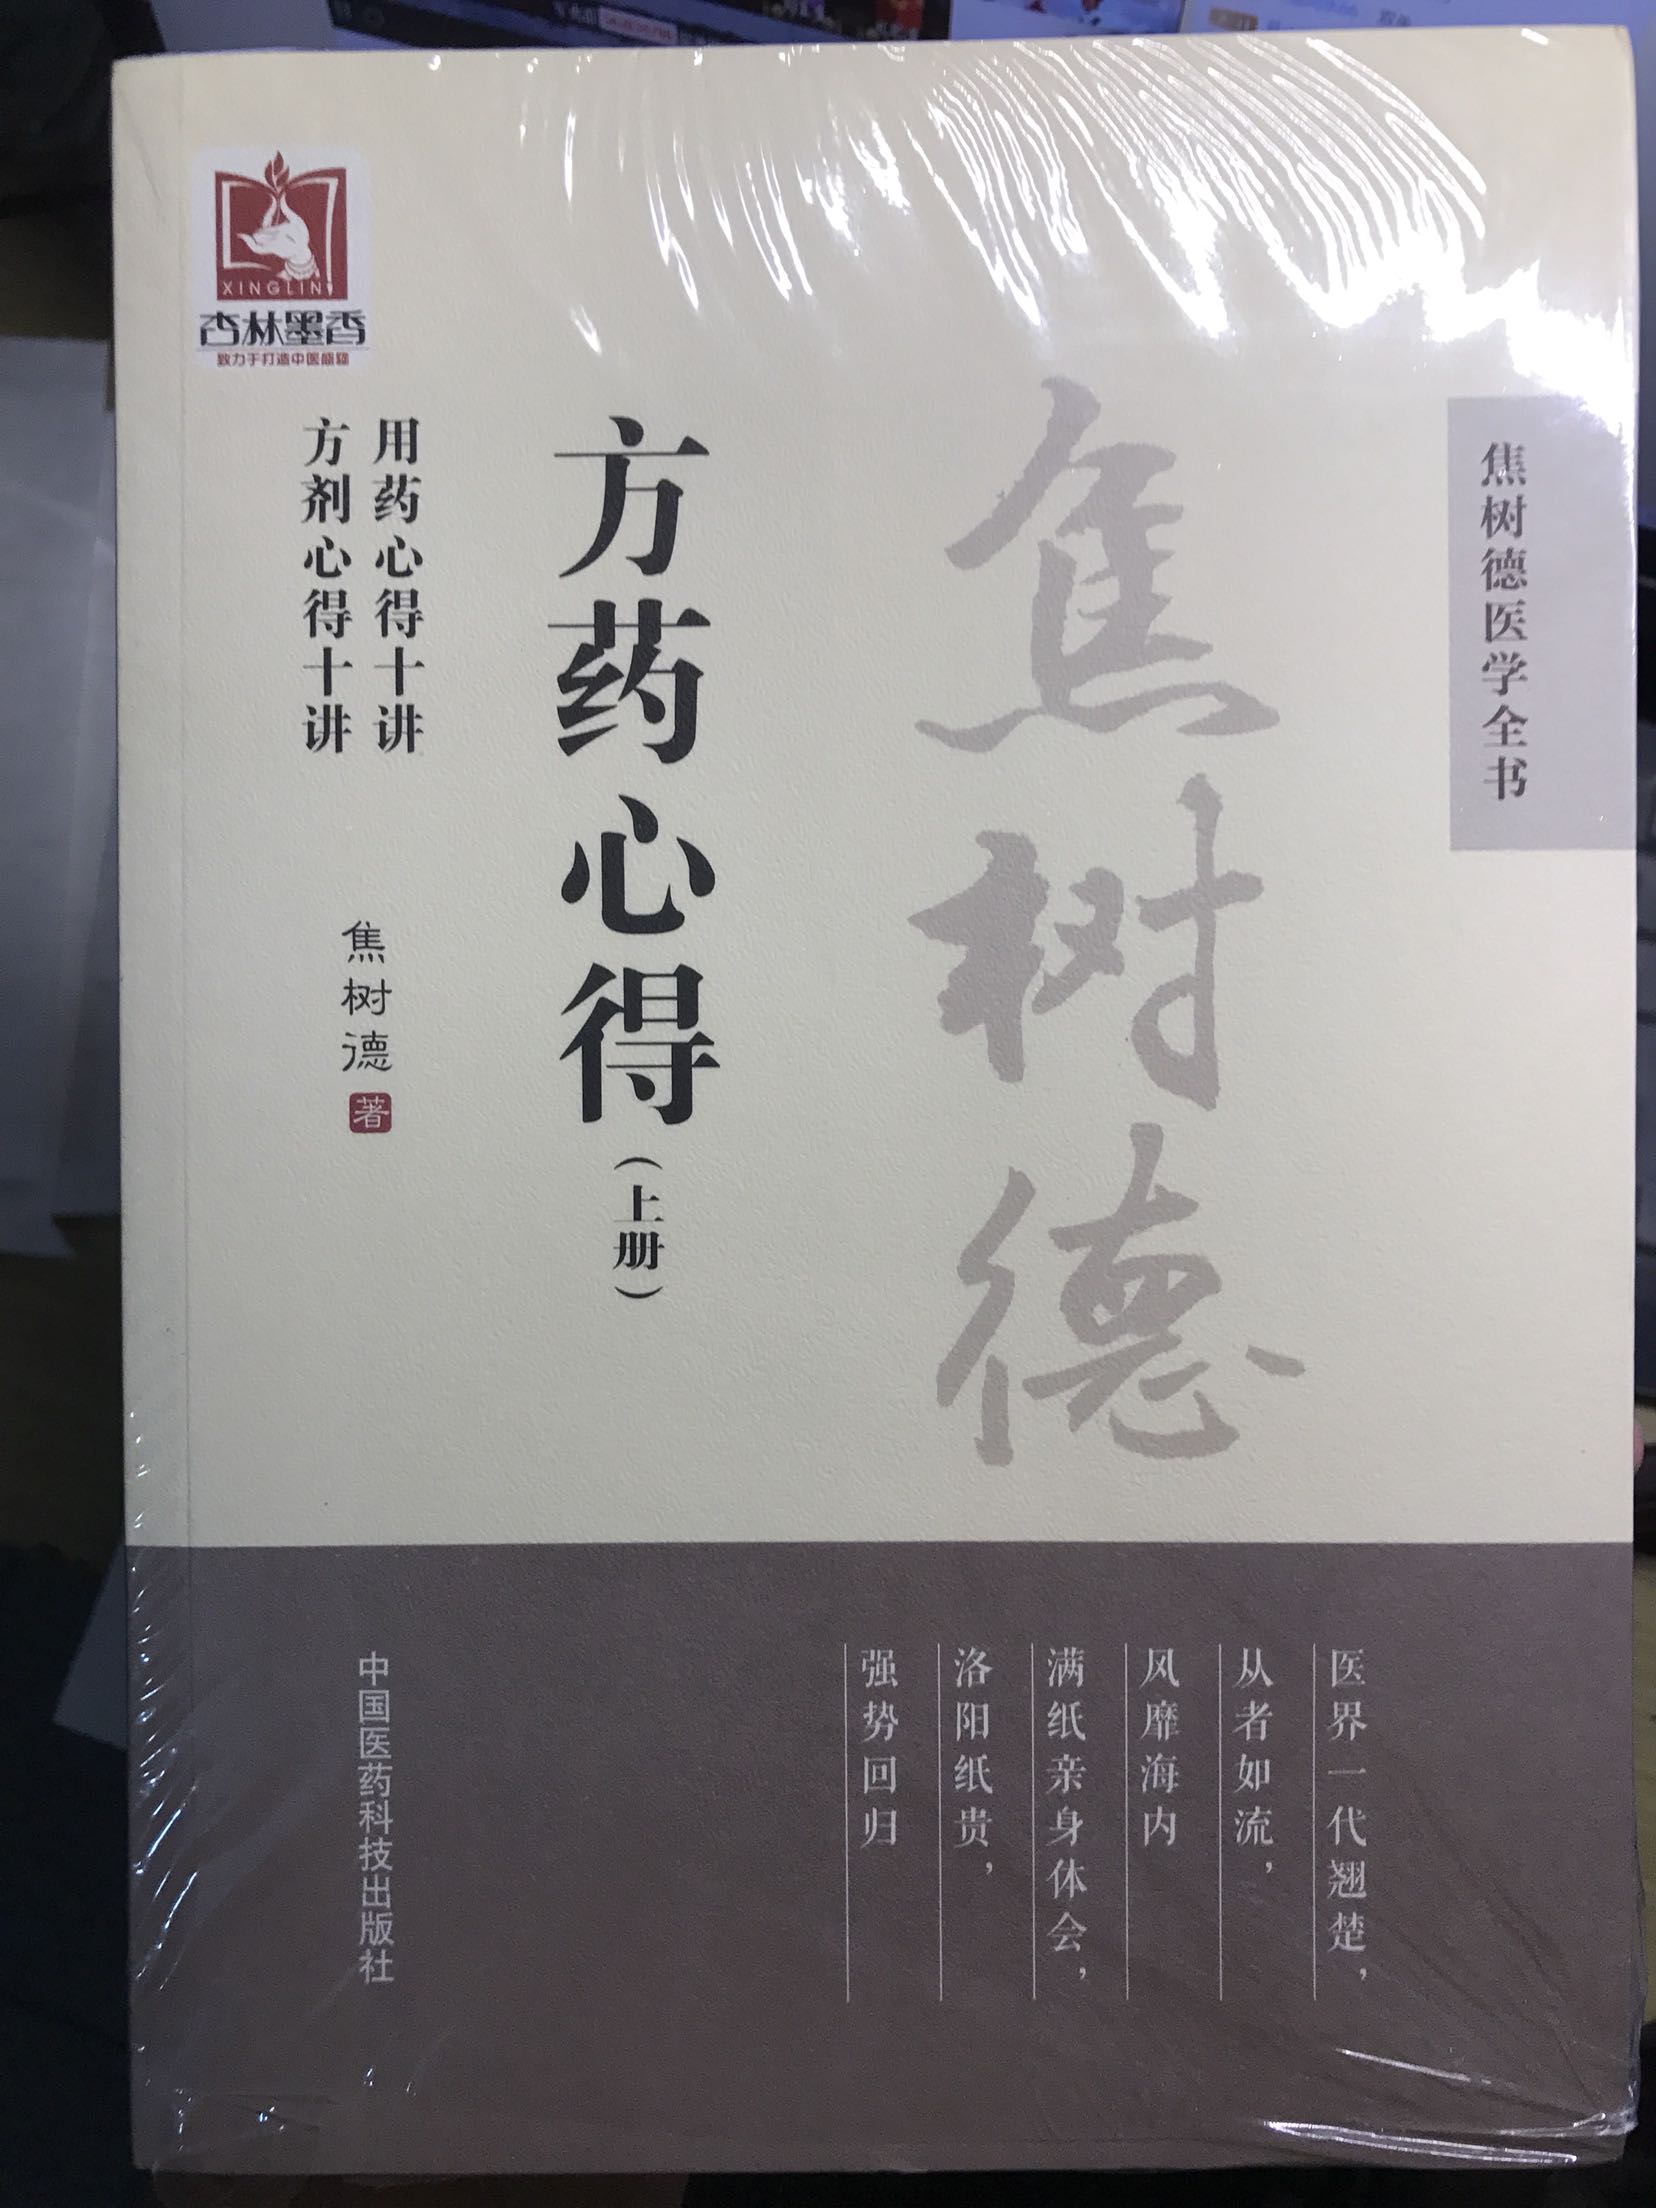 焦先生的书可是中医临床的好书。